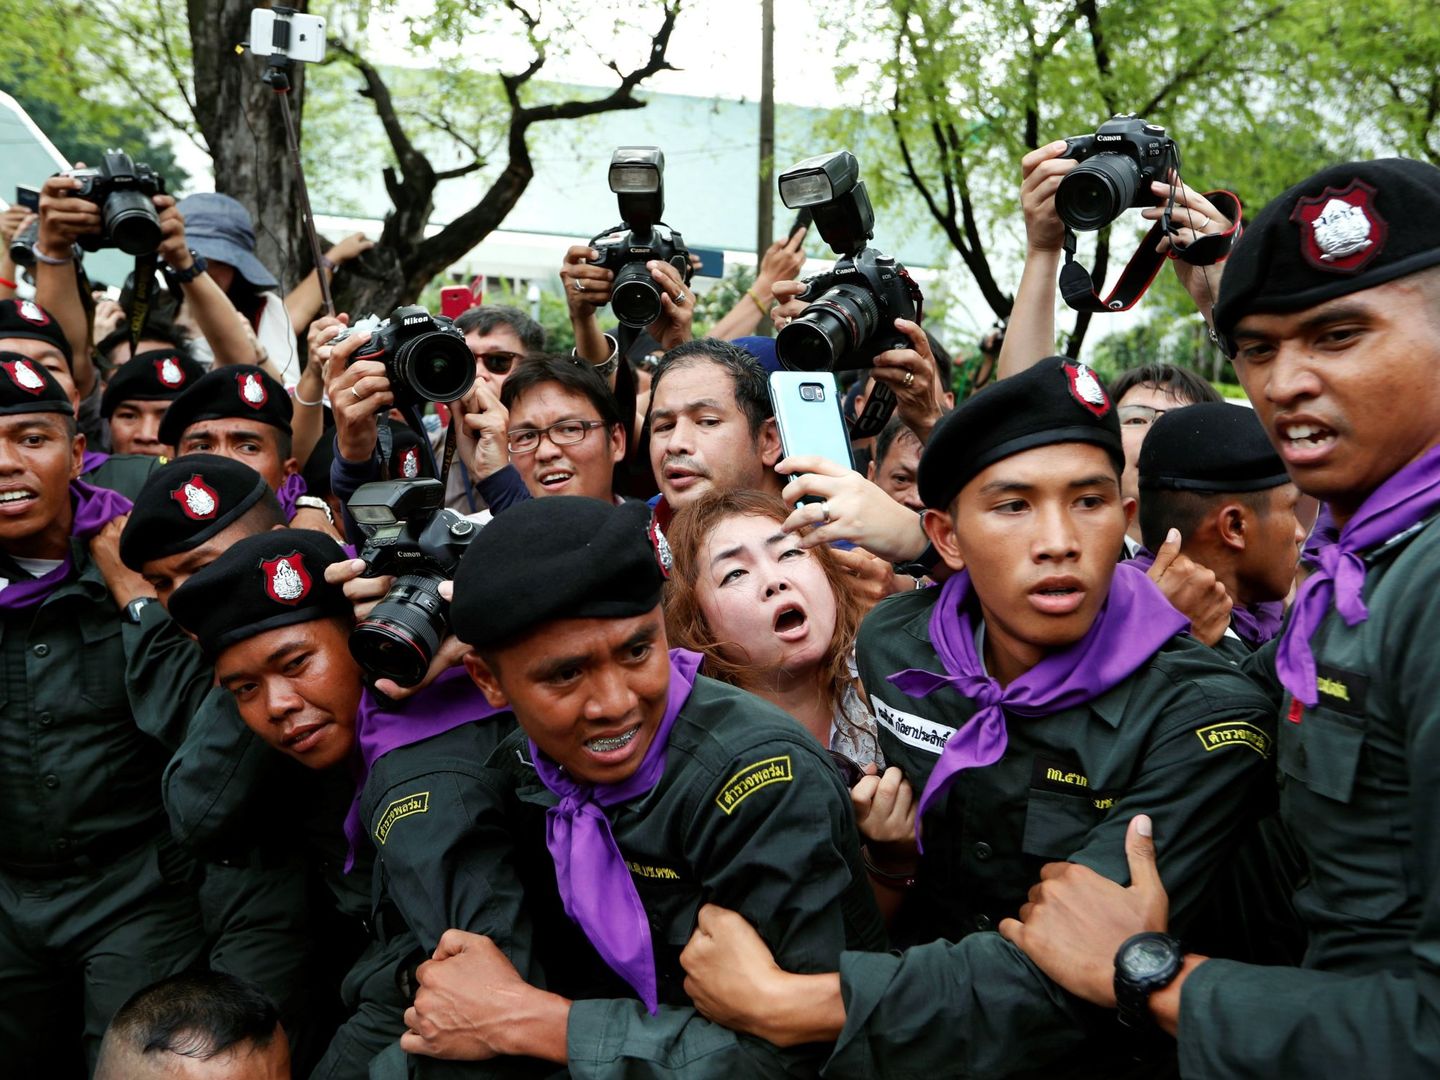 La policía dificulta el trabajo de la prensa mientras arresta a los manifestantes tailandeses pro-democracia, cerca de la casa del Gobierno en Bangkok, el 22 de mayo de 2018. (EFE)